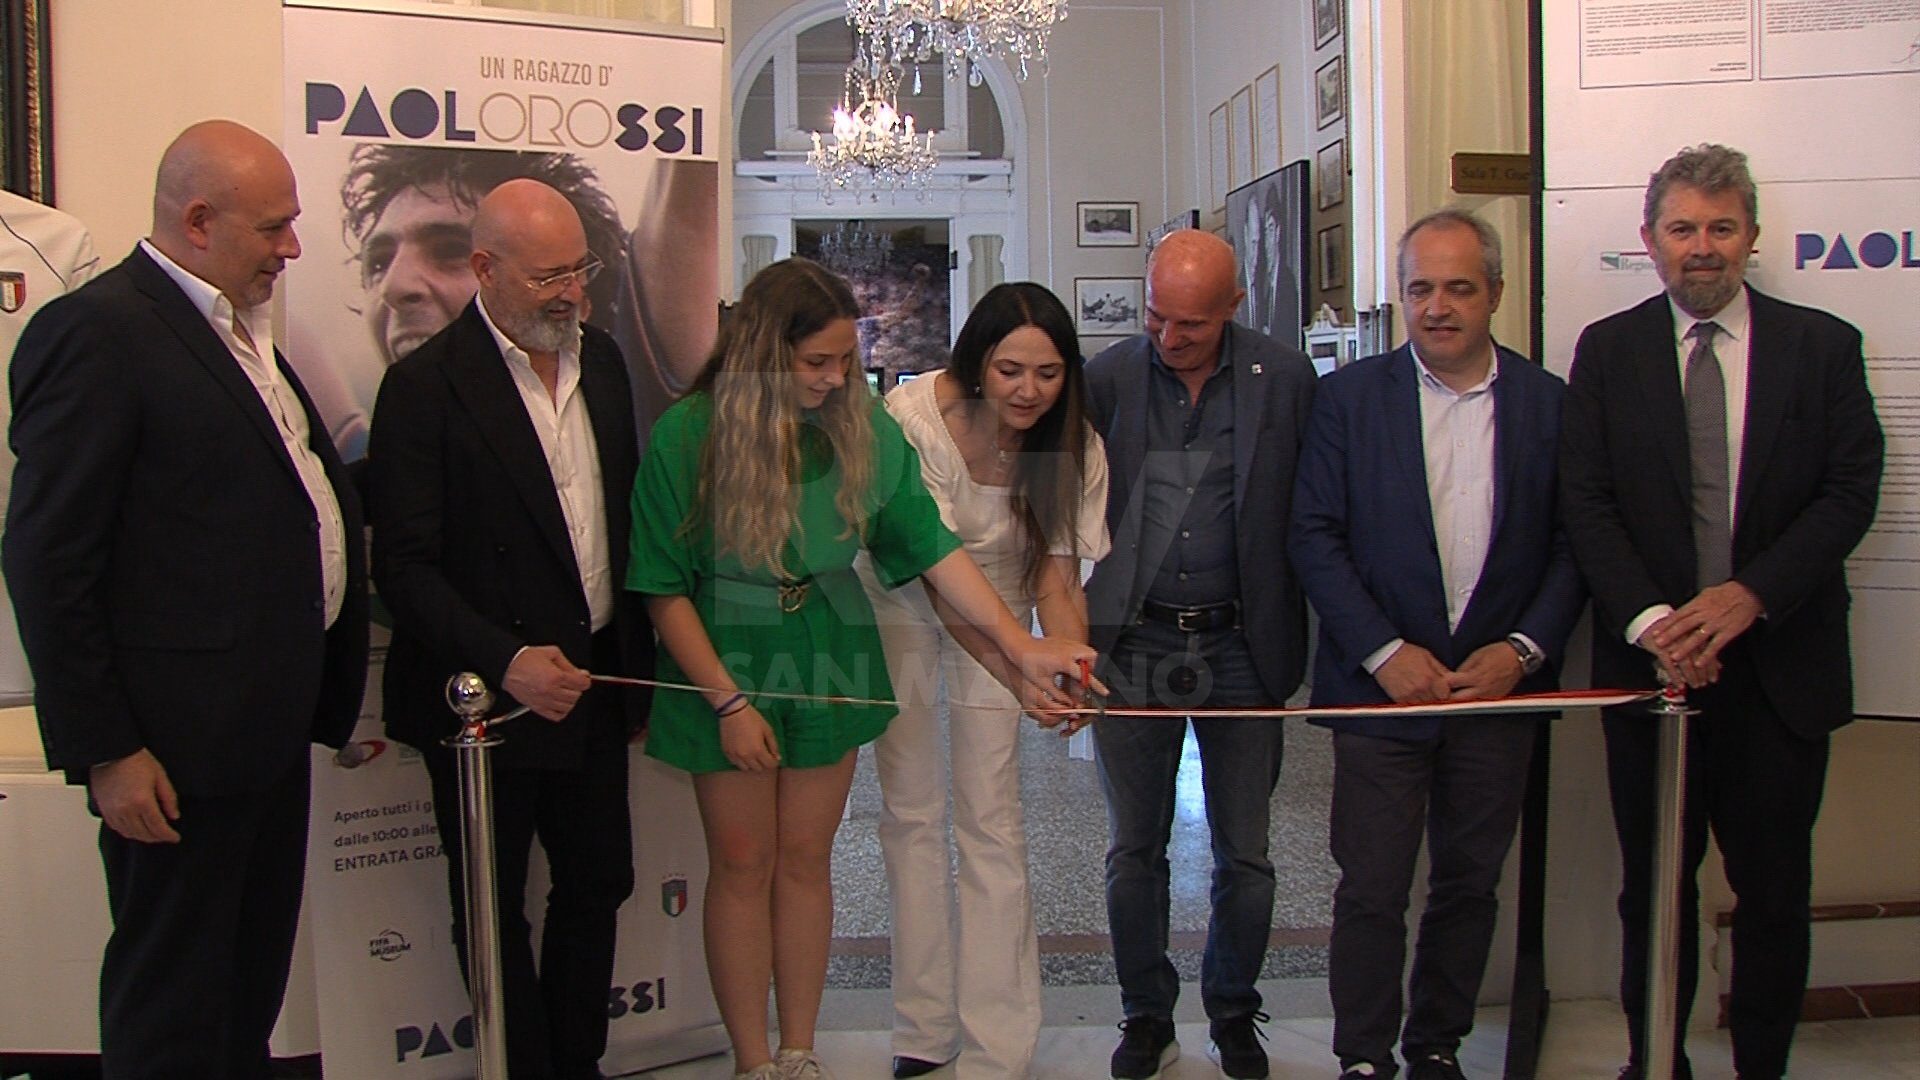 Inaugurazione della Mostra dedicata a Paolo Rossi, Paolo Rossi, un ragazzo d'oro, realizzata in collaborazione con la Regione Emilia-Romagna